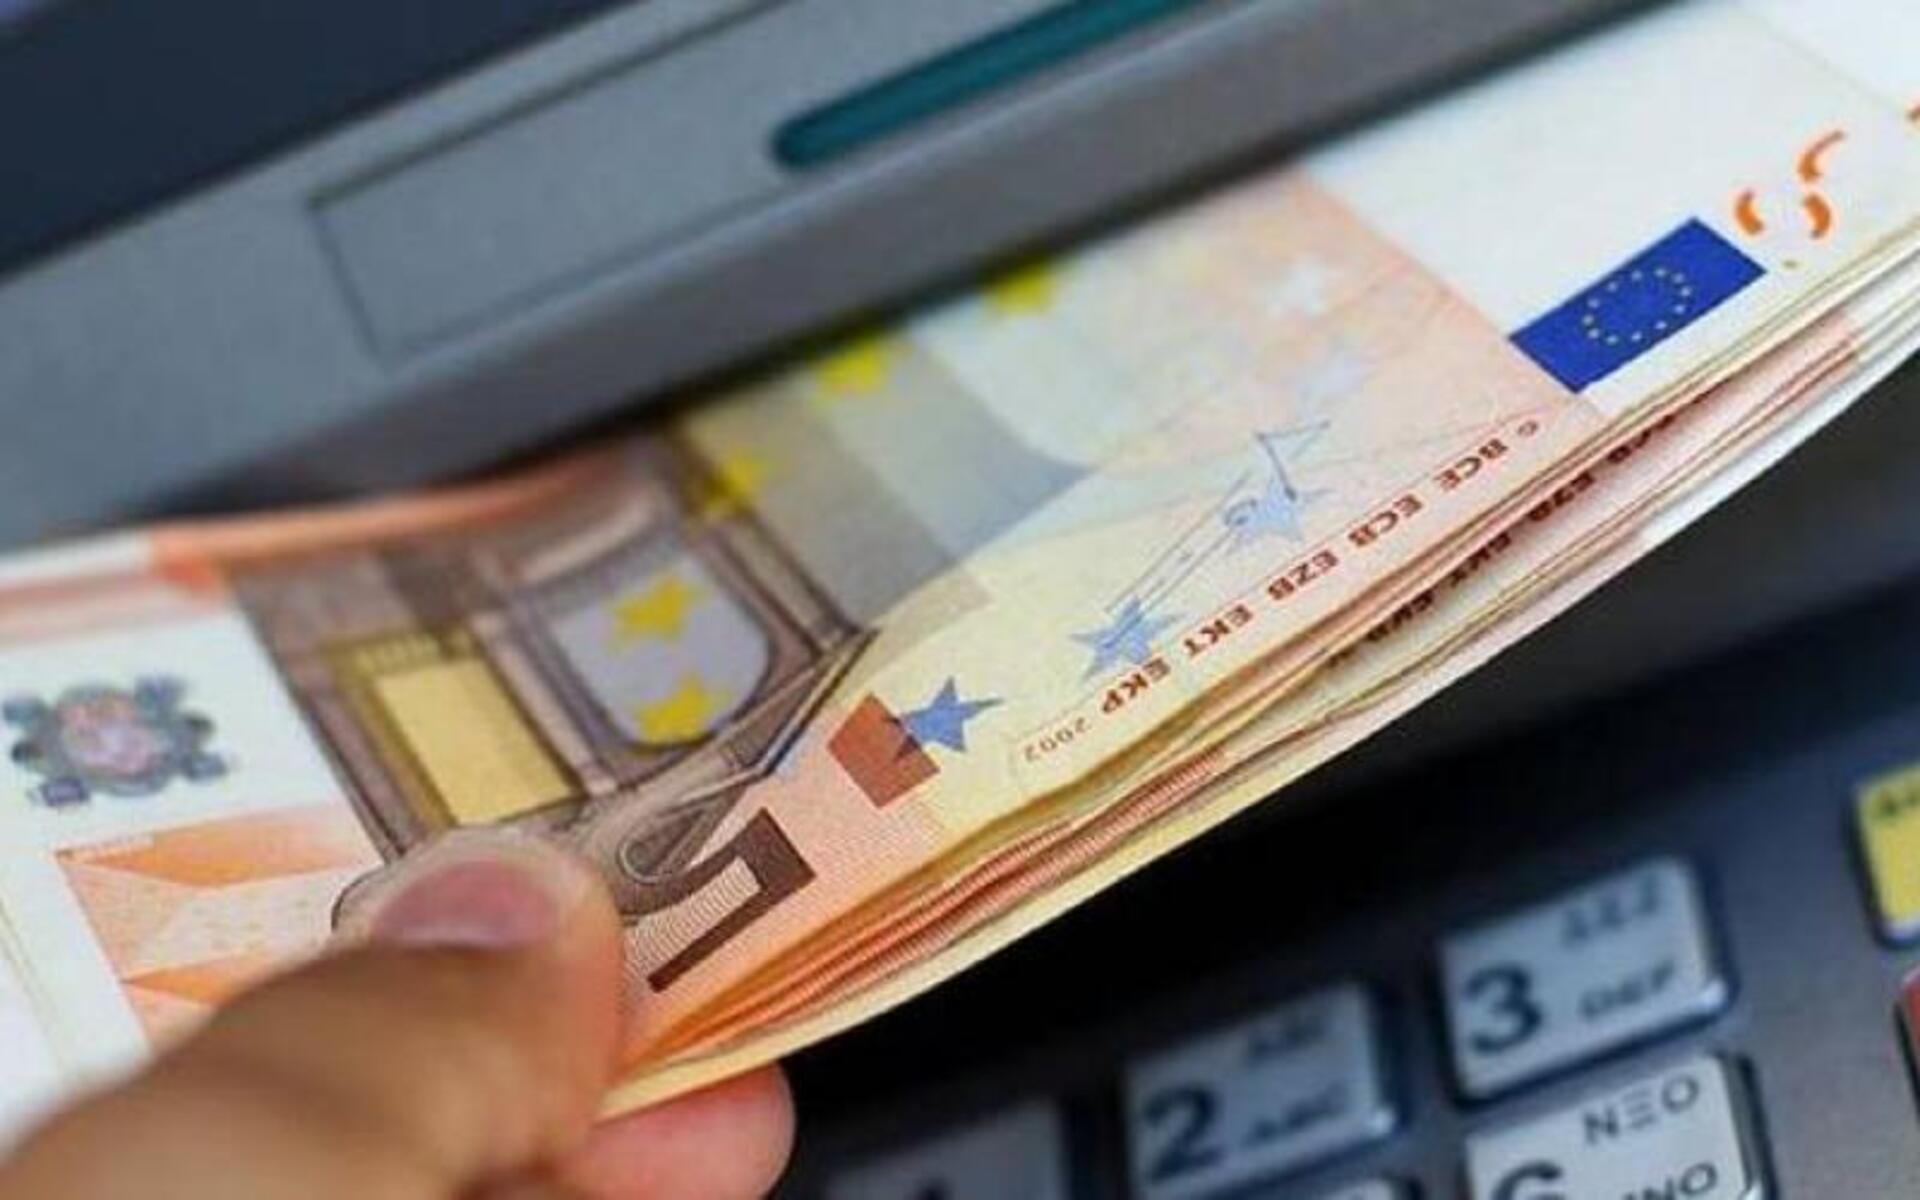 Νάουσα: 31χρονος ξάφριζε τους τραπεζικούς λογαριασμούς ηλικιωμένου φίλου του Έκανε αναλήψεις και διαδικτυακές αγορές, ύψους 64.000 ευρώ, μέσα σε διάστημα ενάμιση χρόνου